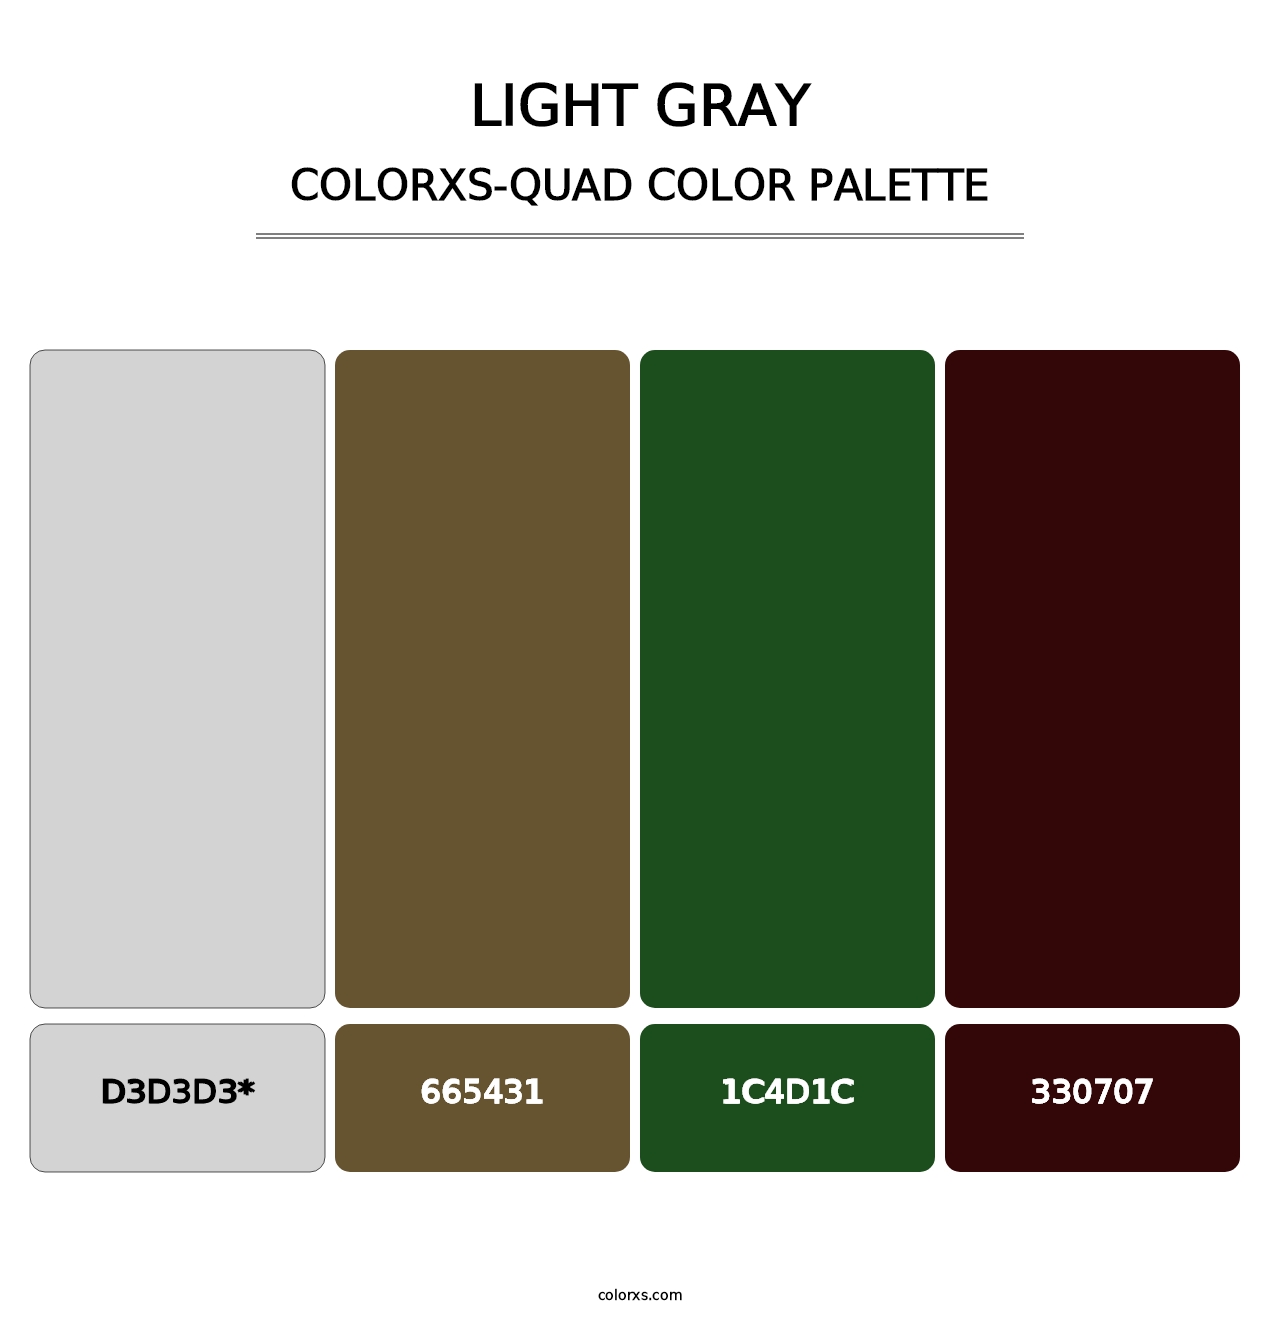 Light Gray - Colorxs Quad Palette